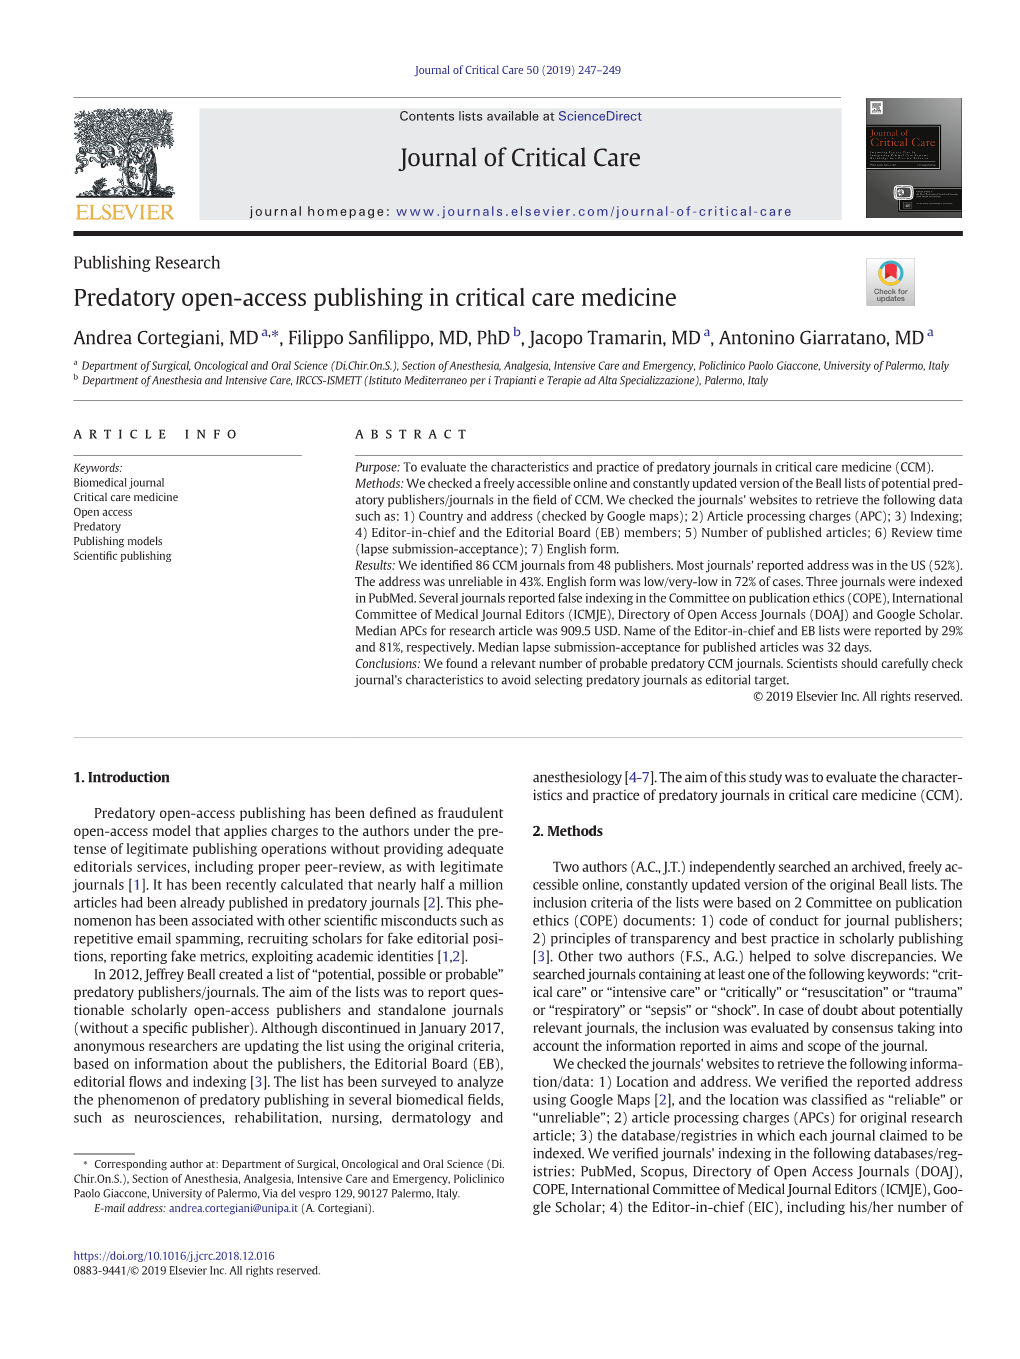 Predatory Open-Access Publishing in Critical Care Medicine